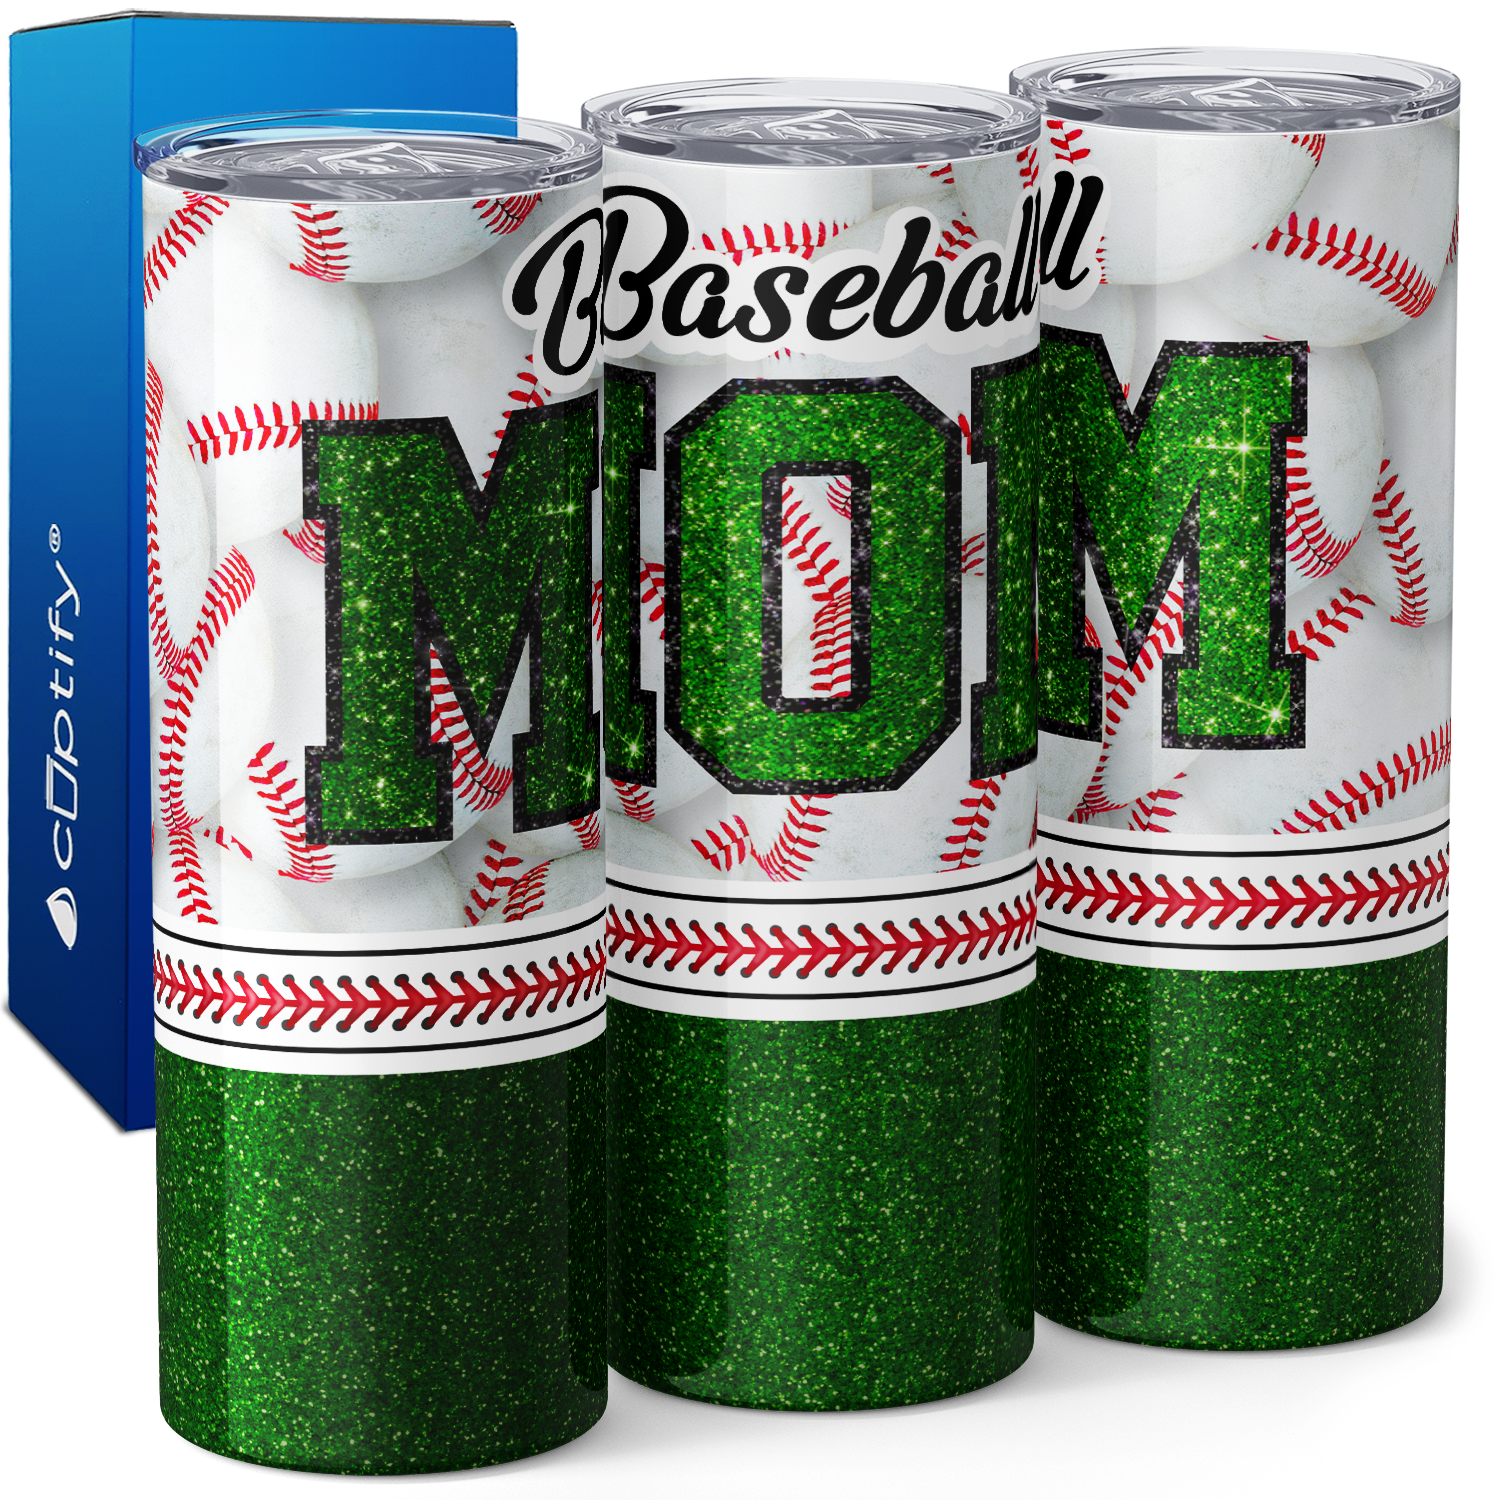 Baseball Mom Green Glitter 20oz Skinny Tumbler